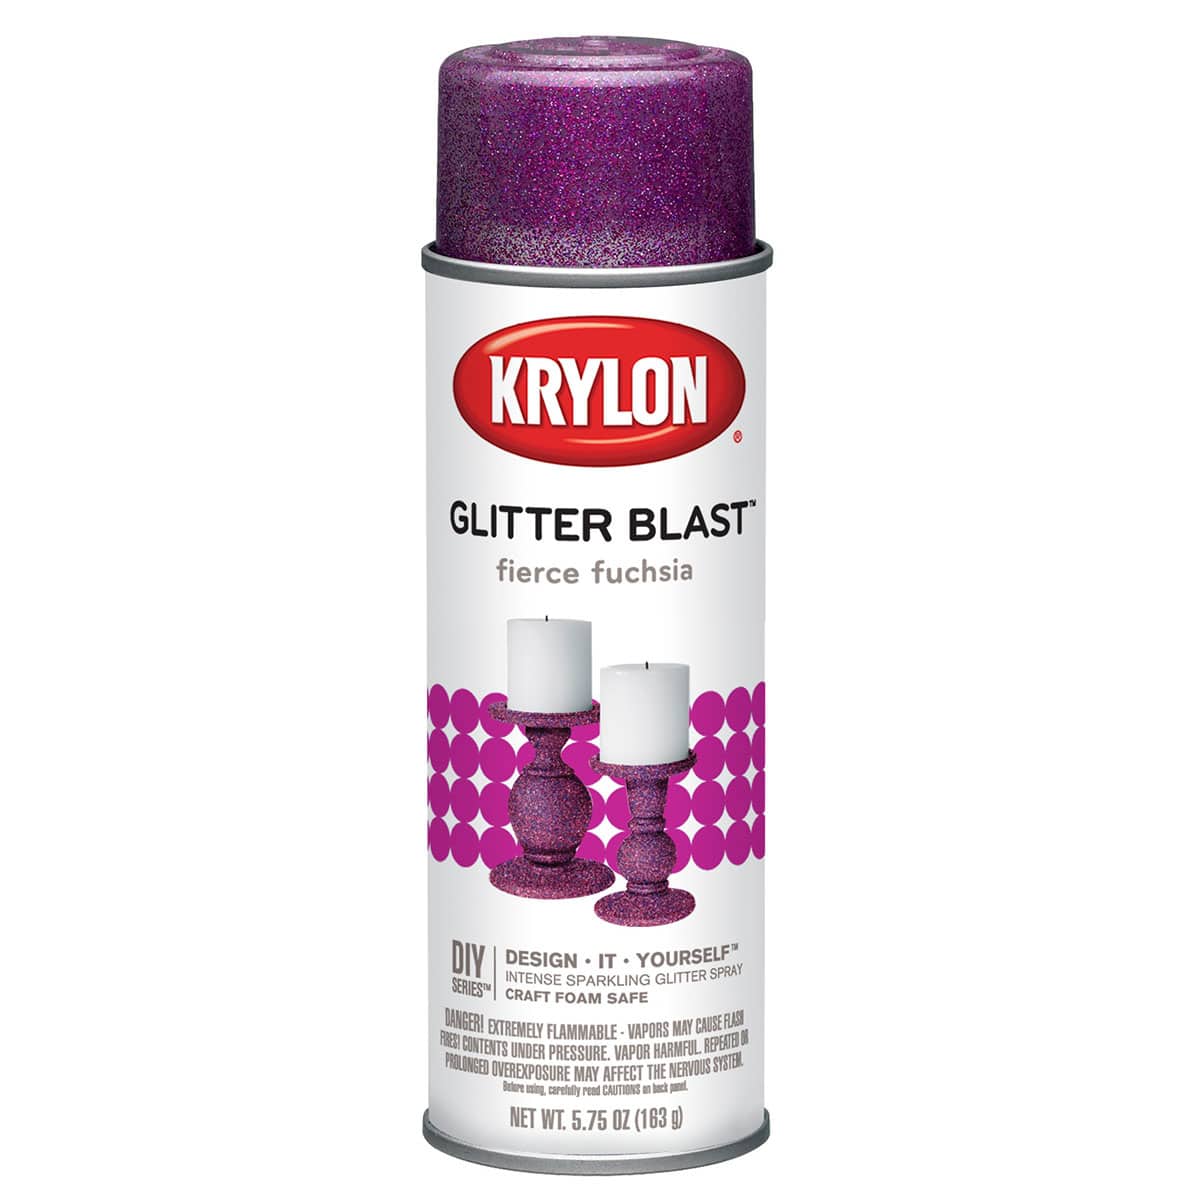  Krylon K03804A00 Glitter Blast Glitter Spray Paint for